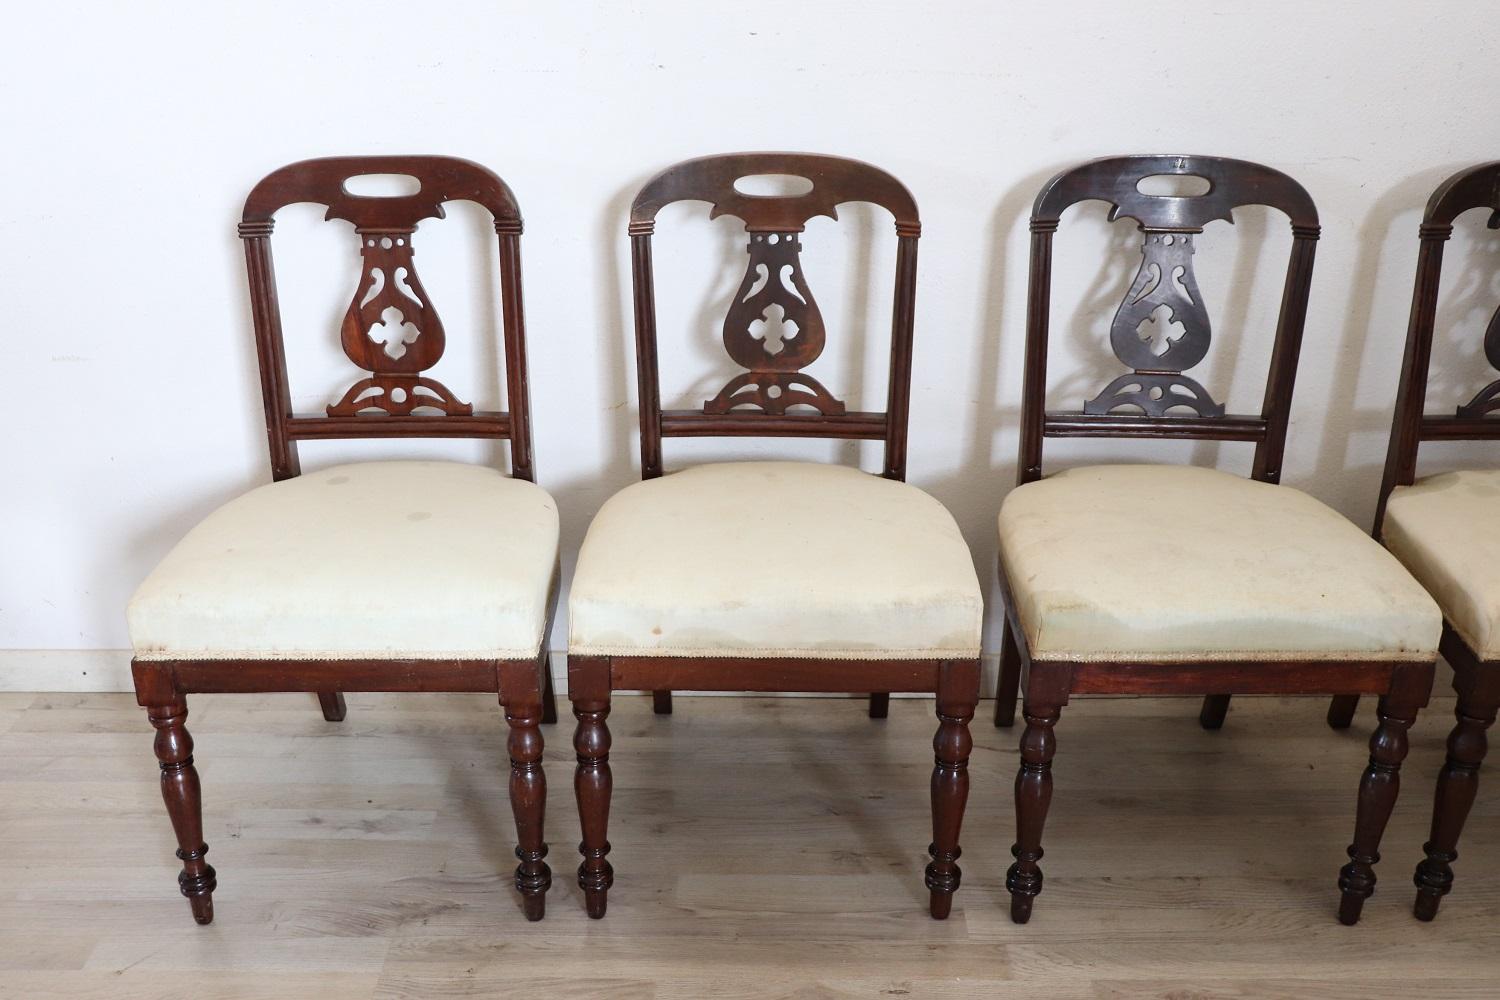 Serie von sechs raffinierten englischen Mahagoniholzstühlen des 19. Jahrhunderts. Die Beine sind sehr elegant mit gedrechselten Holzdekorationen. Die Rückenlehne ist mit einer aufwendigen Holzschnitzerei verziert. Der Sitz ist breit und bequem. Holz